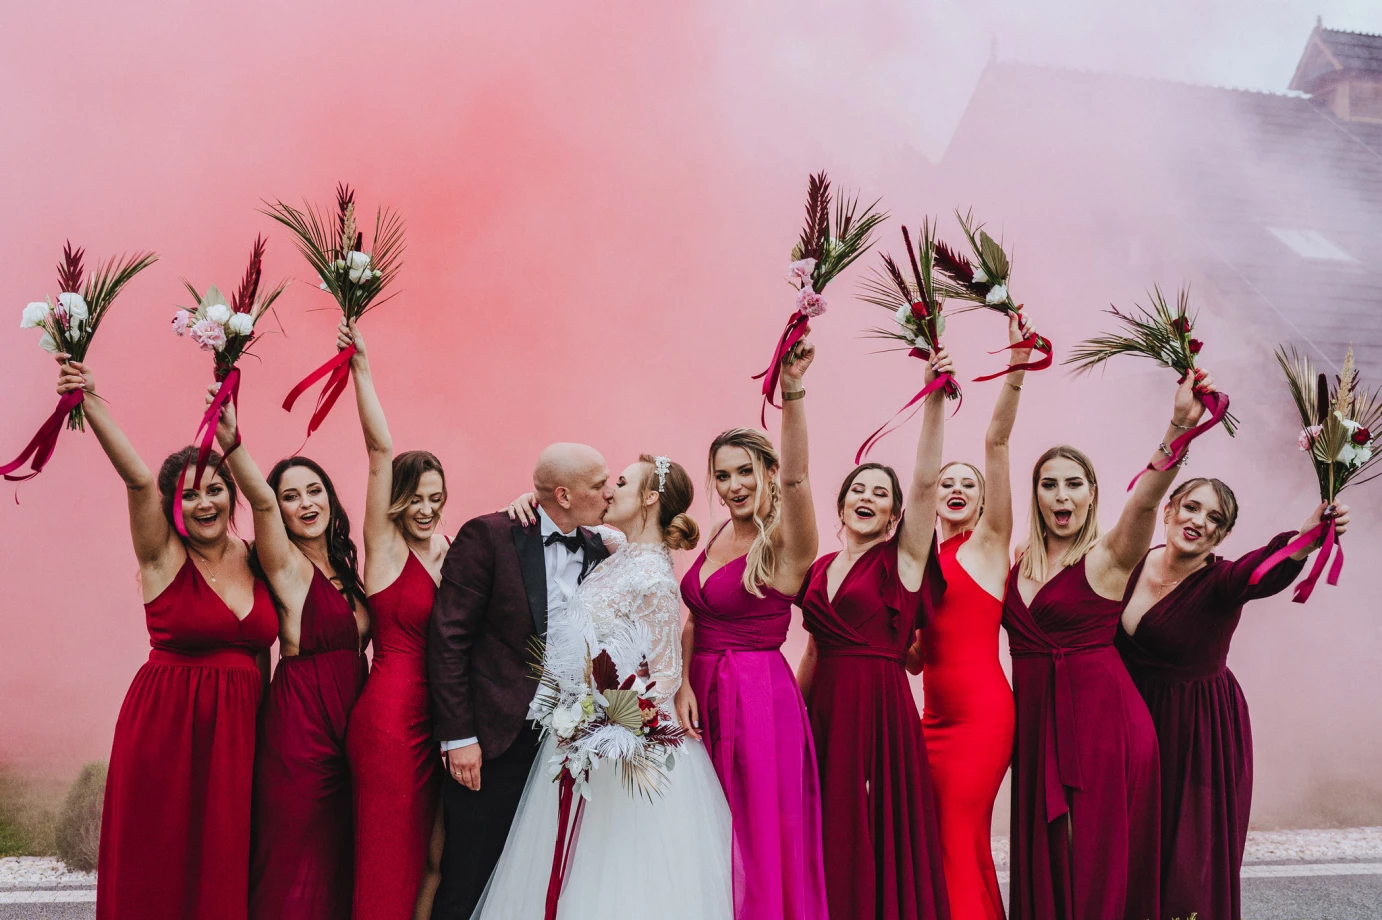 fotograf kedzierzyn-kozle jaroslaw-kozlowski-photography portfolio zdjecia slubne inspiracje wesele plener slubny sesja slubna